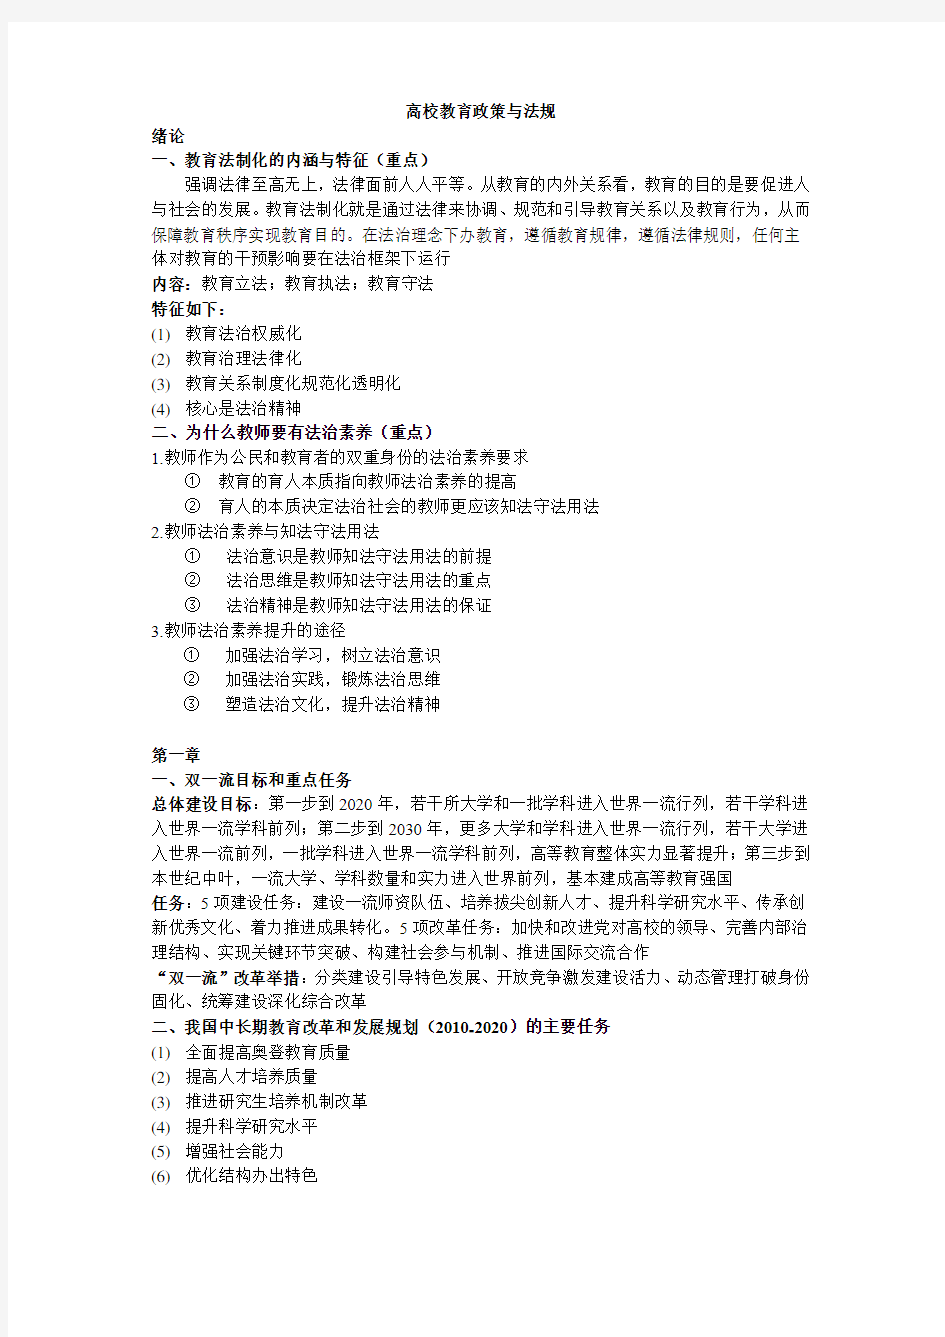 2017江苏省高校教育政策与法规